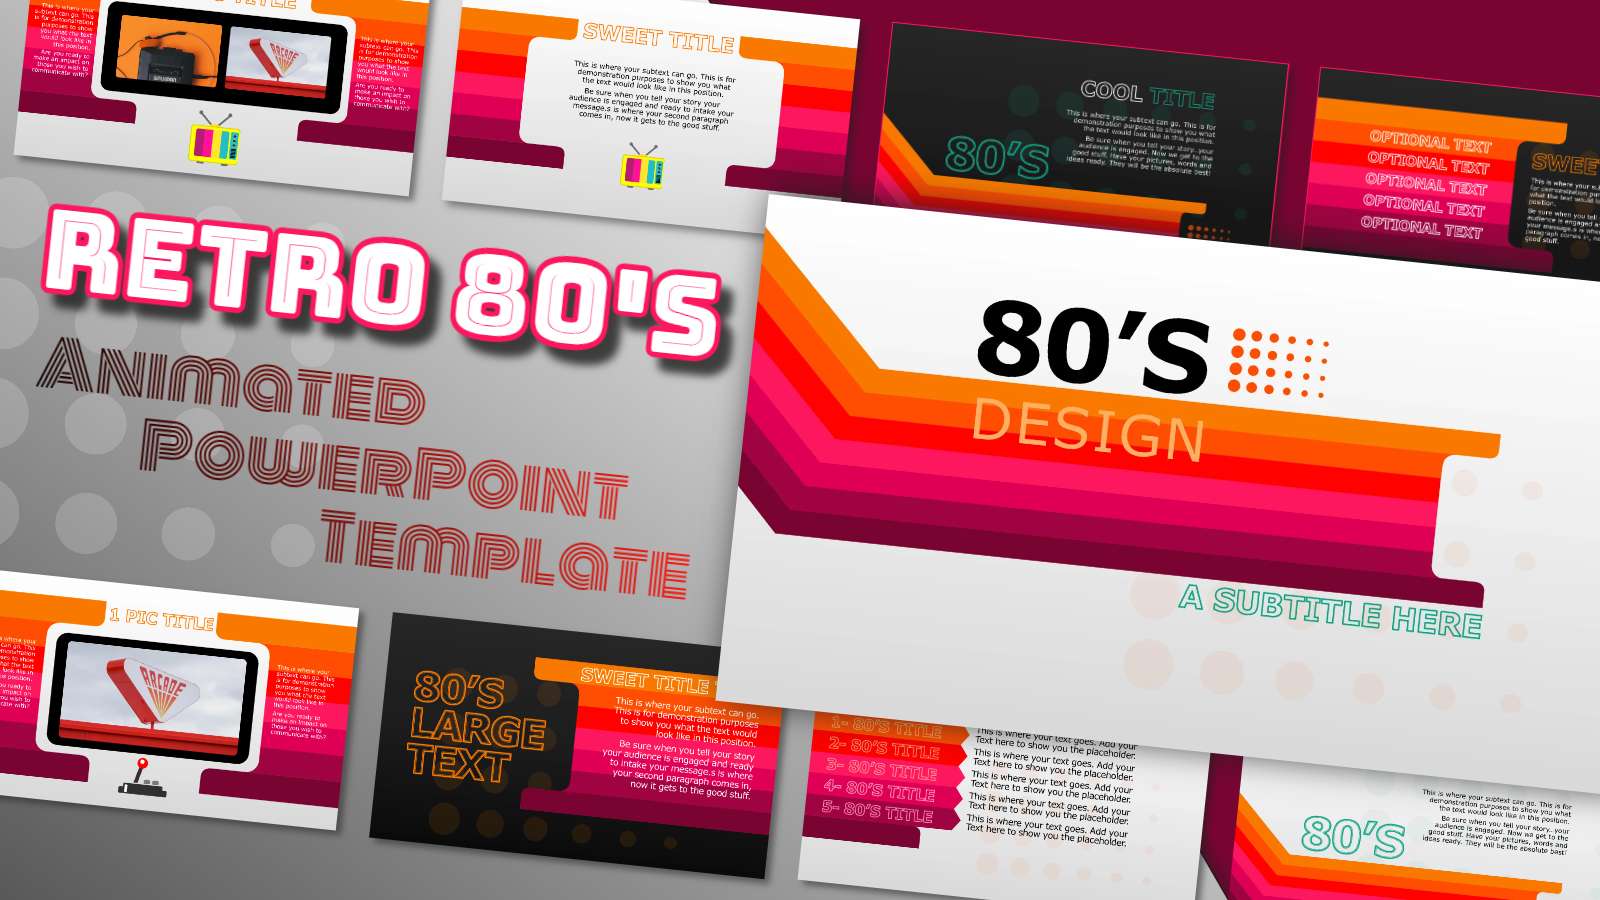 80s-powerpoint-template-prntbl-concejomunicipaldechinu-gov-co